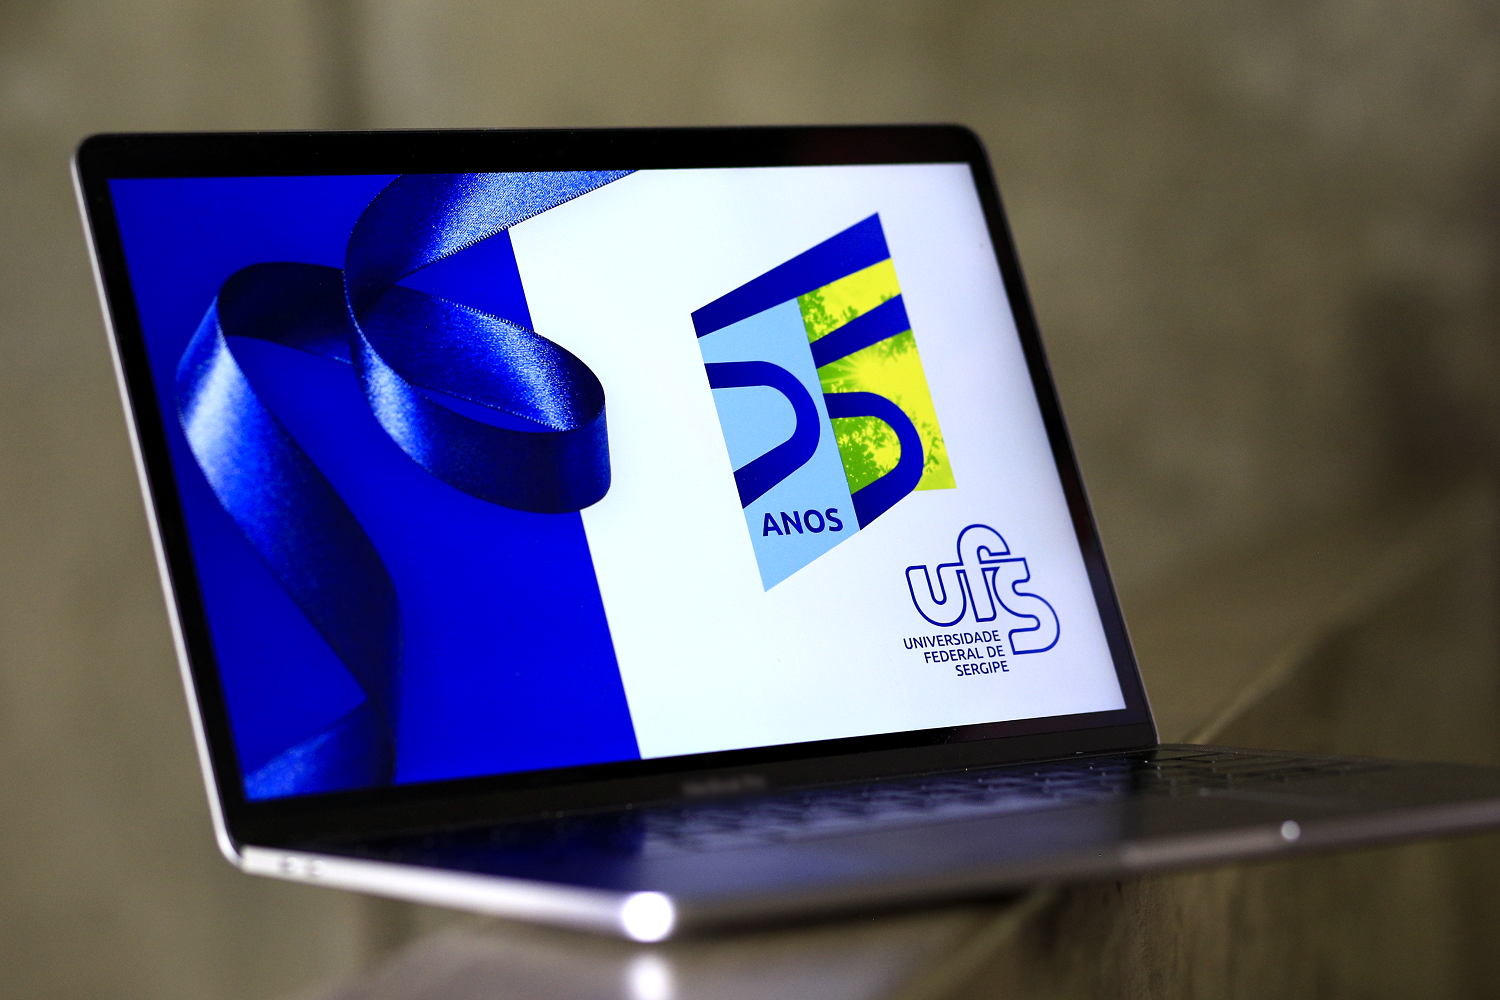 Campanha de identidade visual de 55 anos da UFS foi desenvolvida pelo Núcleo de Design da Decav (Foto: Pedro Ramos/Ascom) 